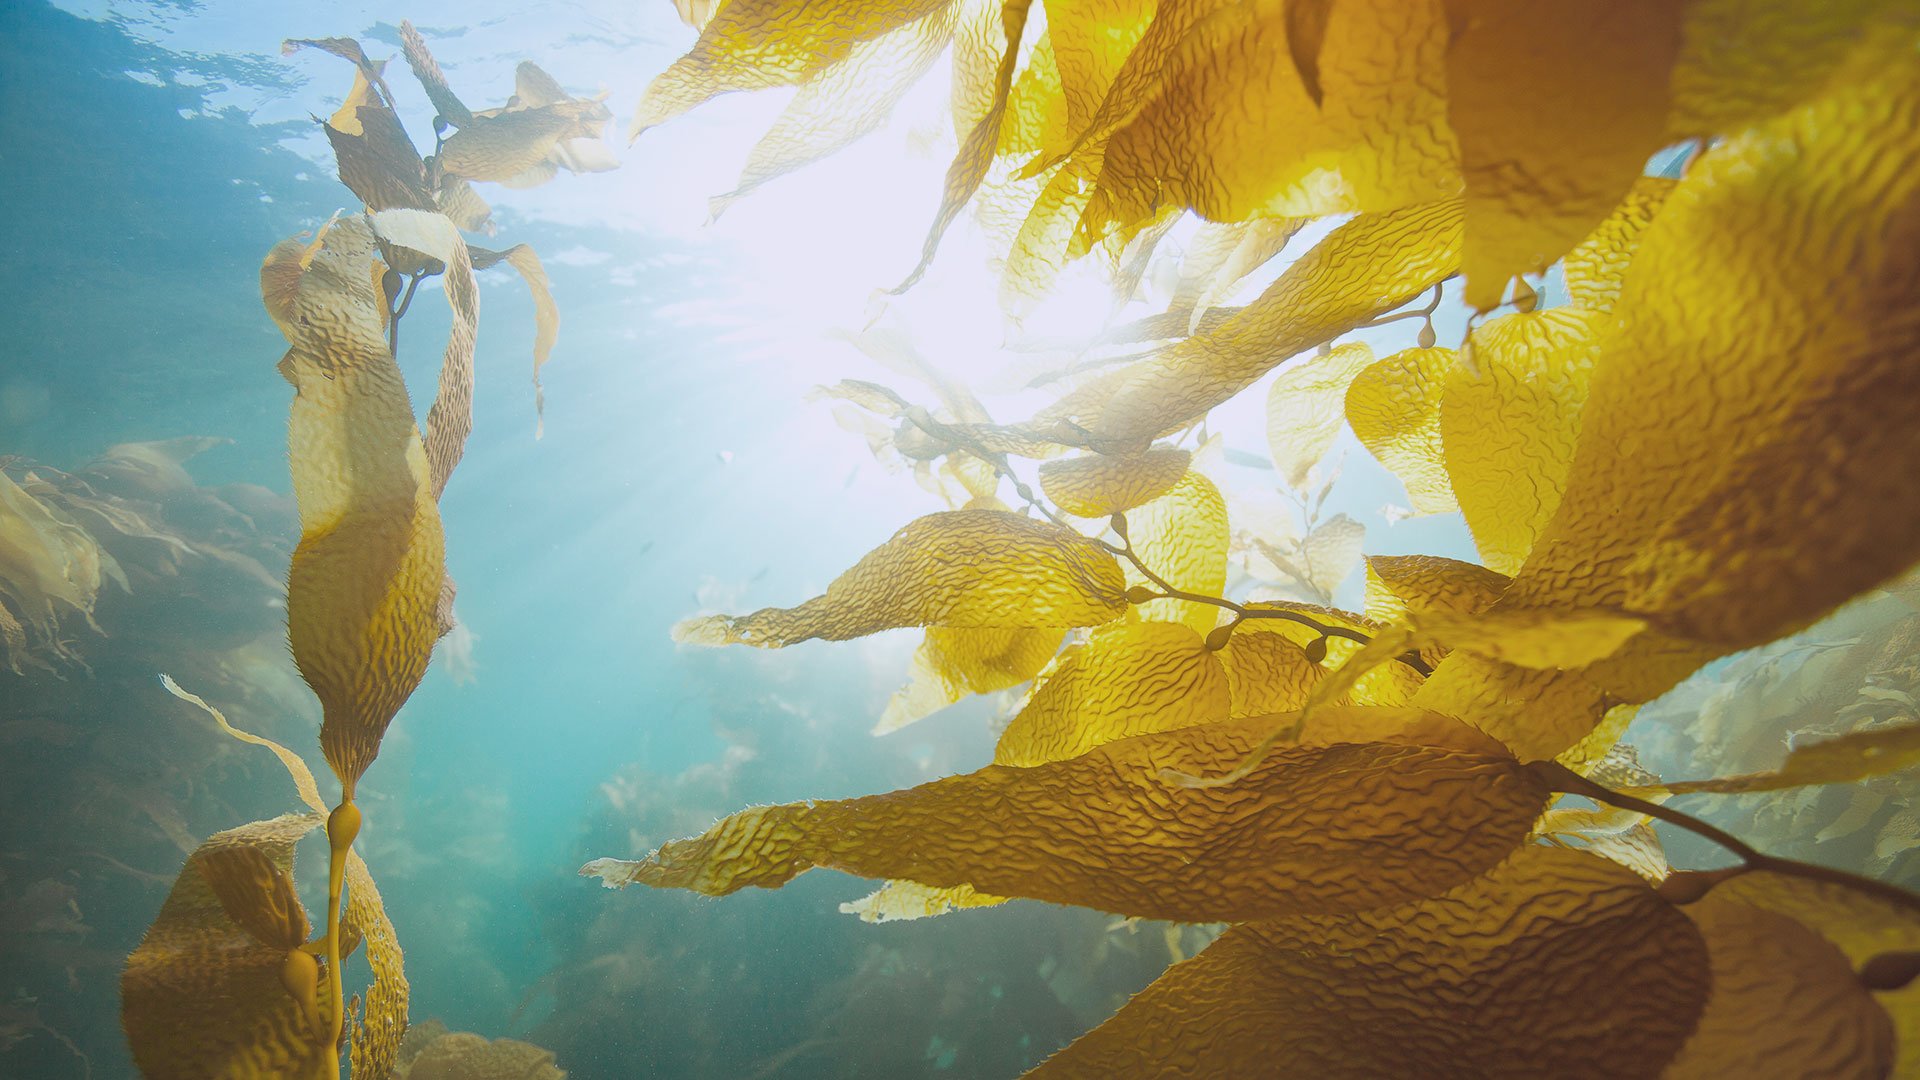 Sun shining through underwater kelp forest 